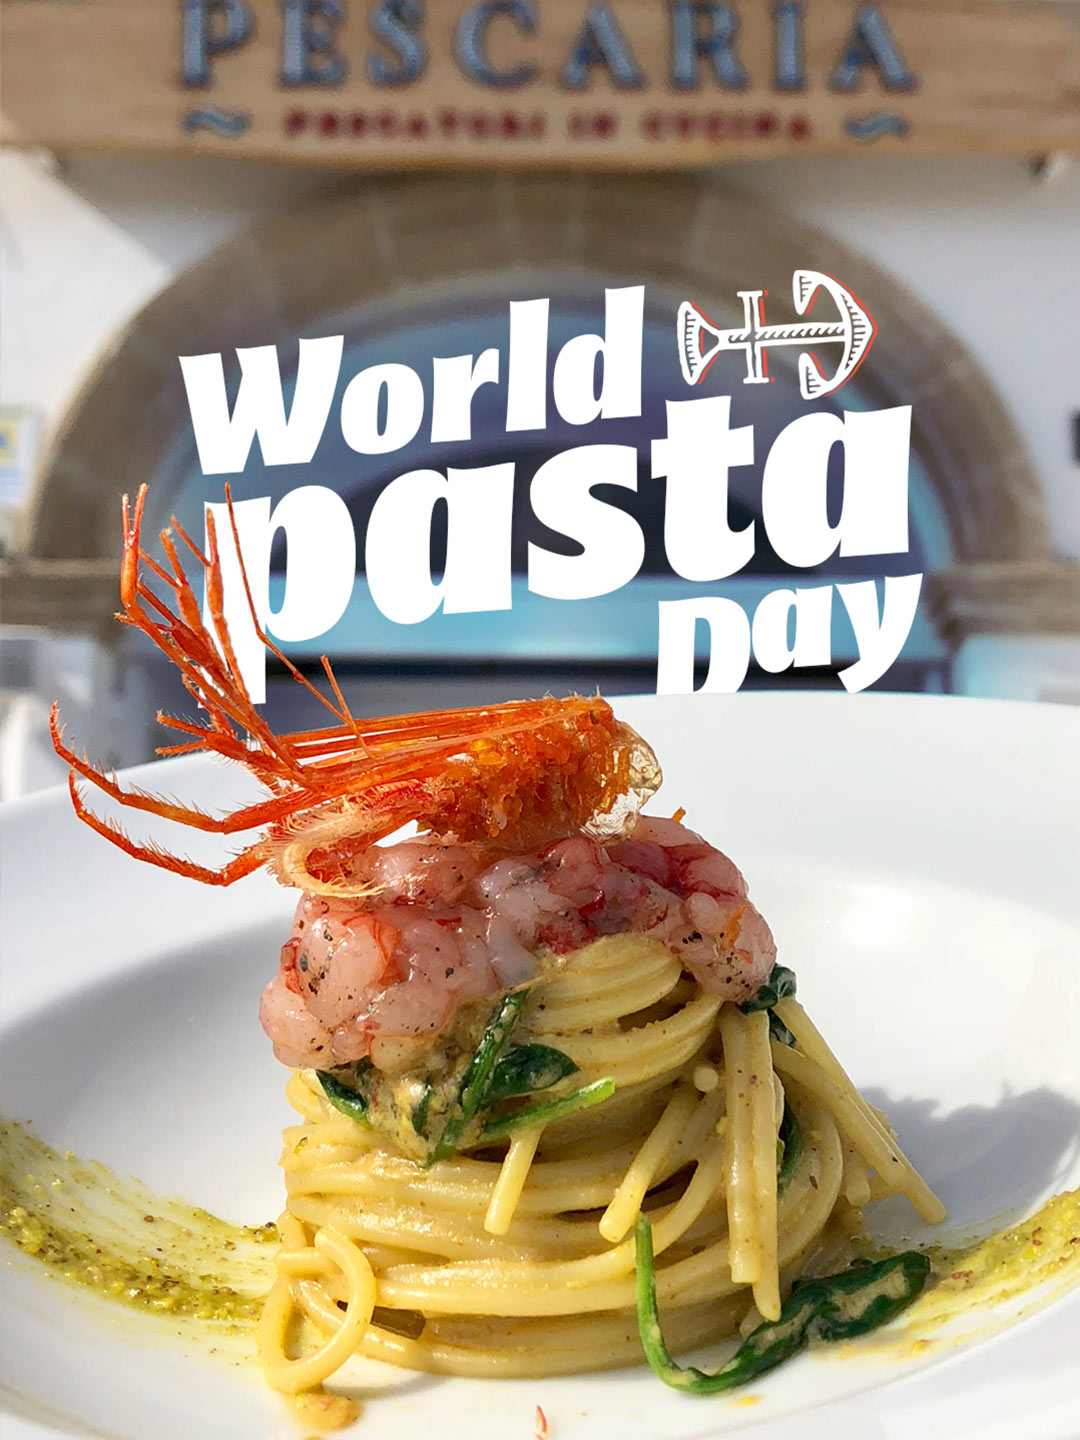 World pasta day Pescaria